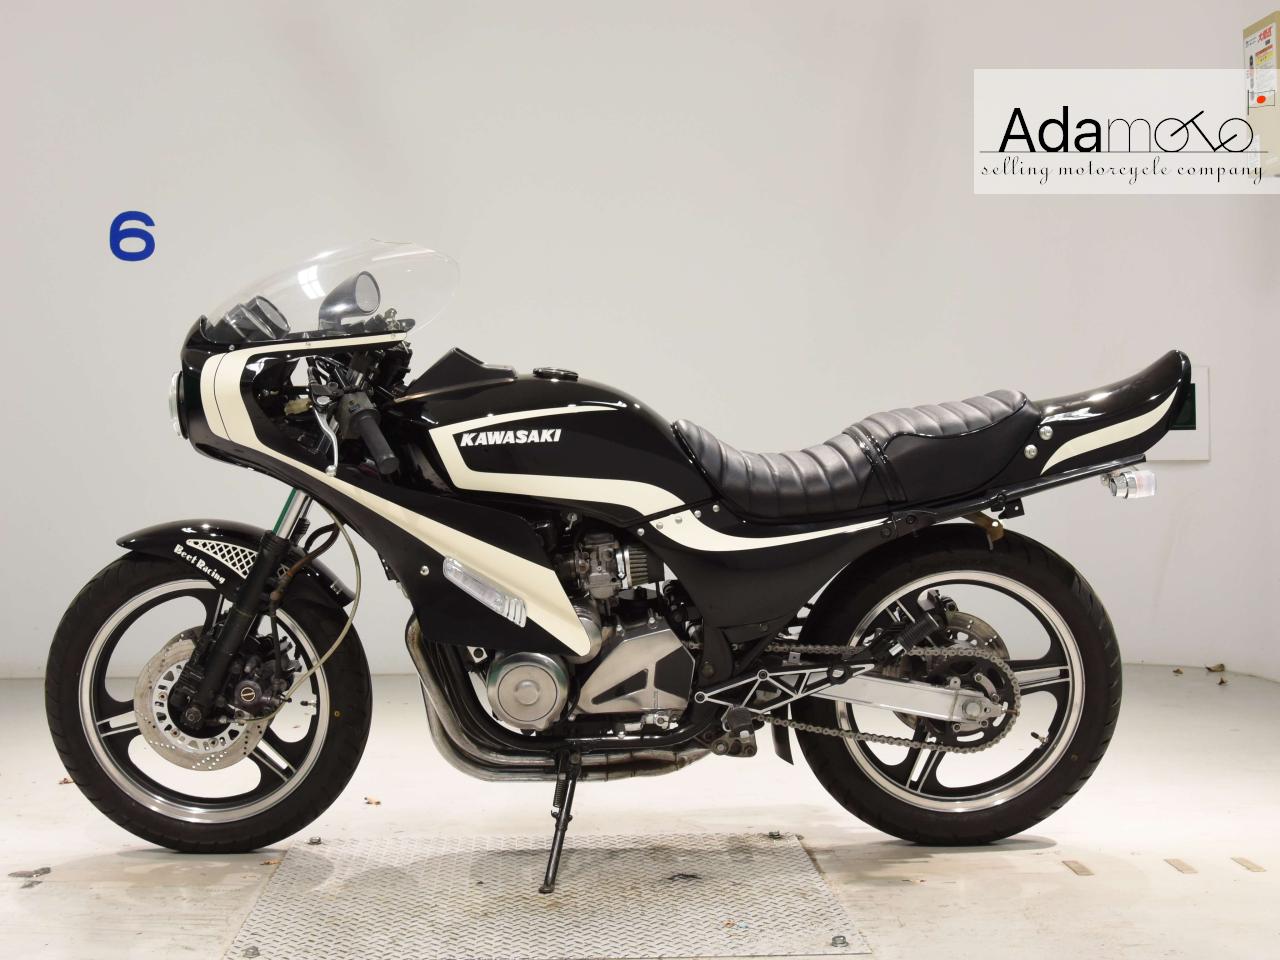 Kawasaki GPZ550 - Adamoto - Motorcycles from Japan